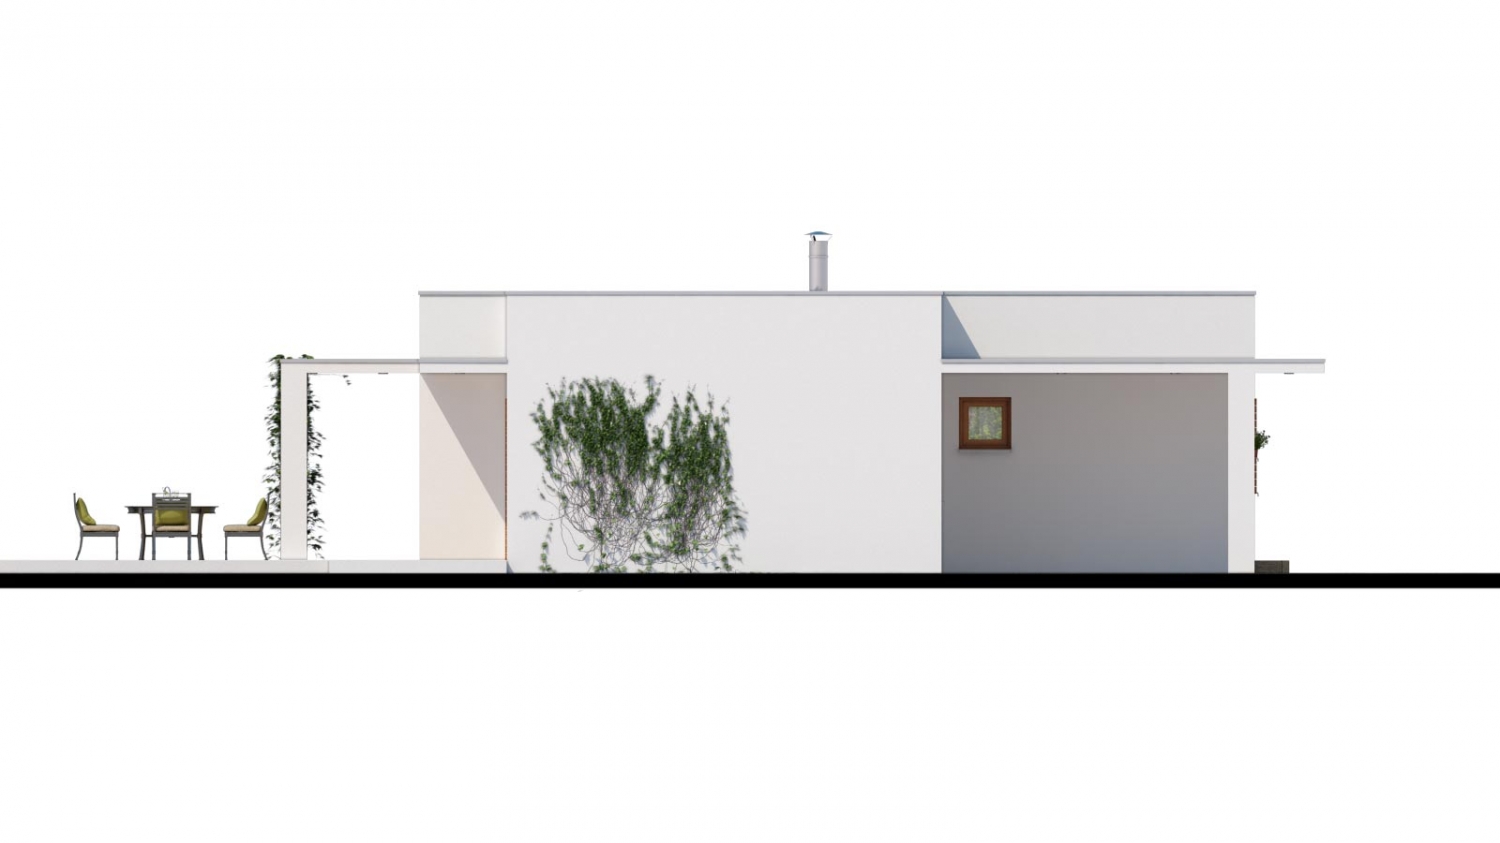 Luxusný 4 - izbový rodinný dom s plochou rovnou strechou a krytým stáním. Obytná časť je orientovaná do záhrady na terasu.